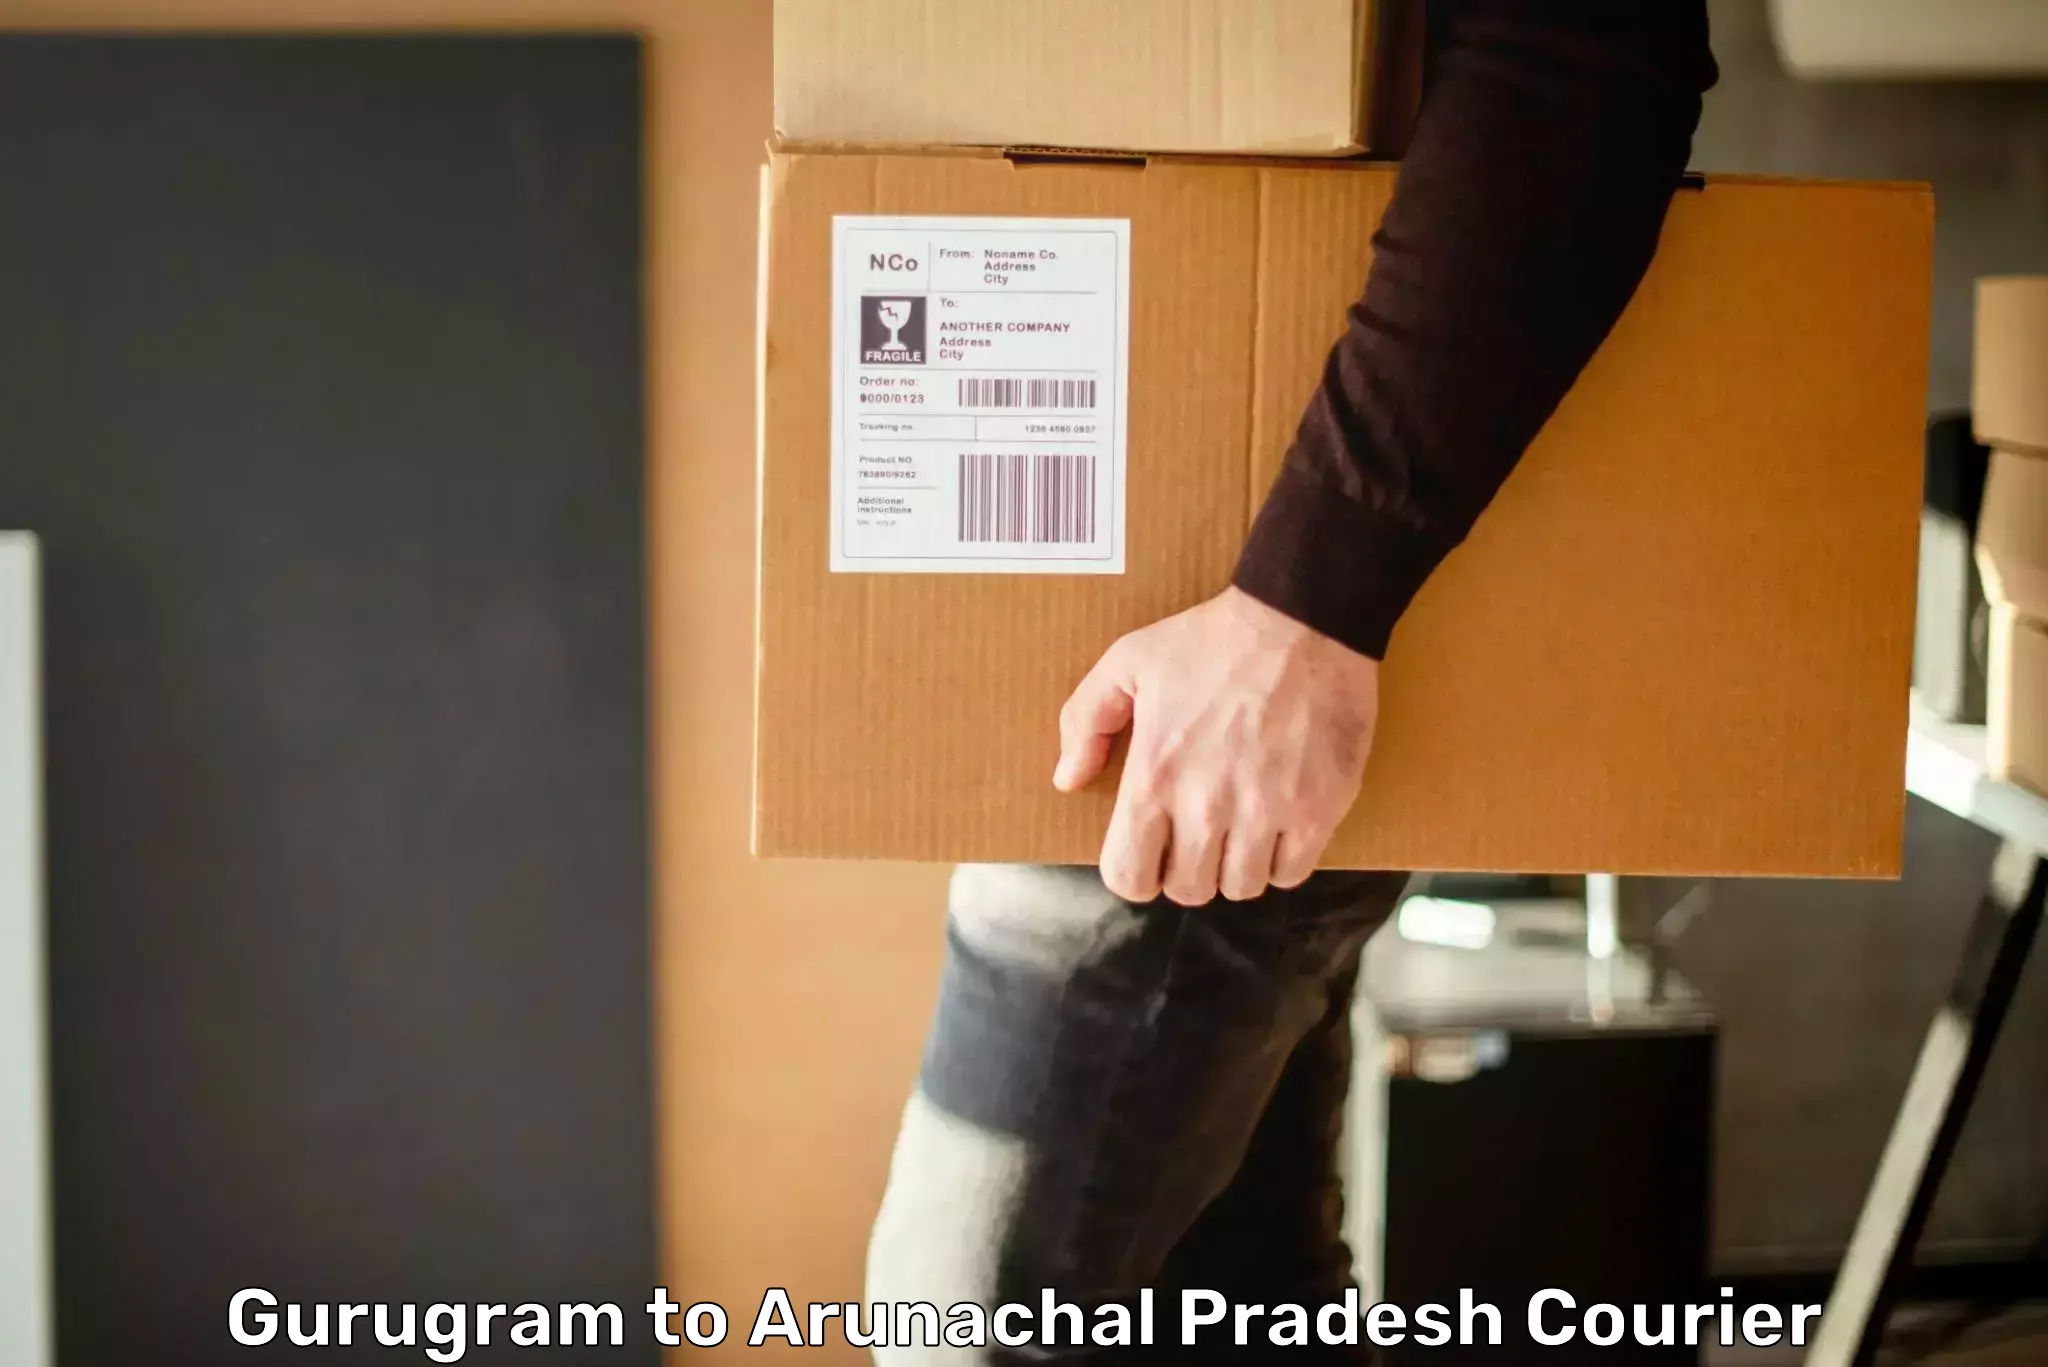 Cash on delivery service Gurugram to Arunachal Pradesh